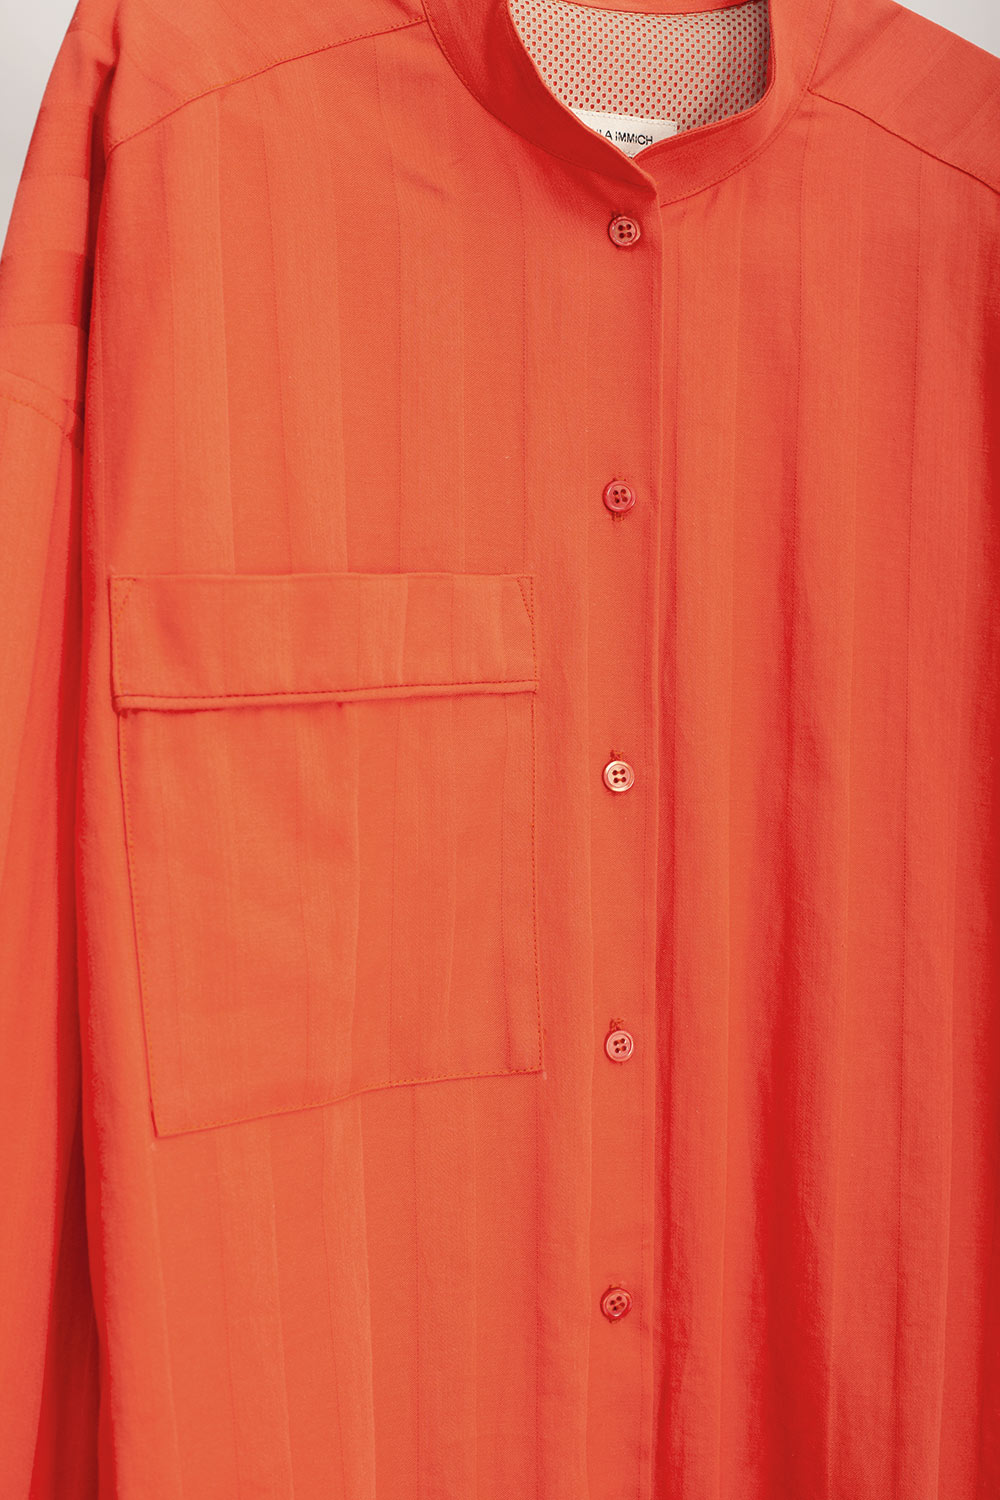 Hemdbluse aus kontrolliert biologischer Baumwolle mit eingewebten Streifen in orange